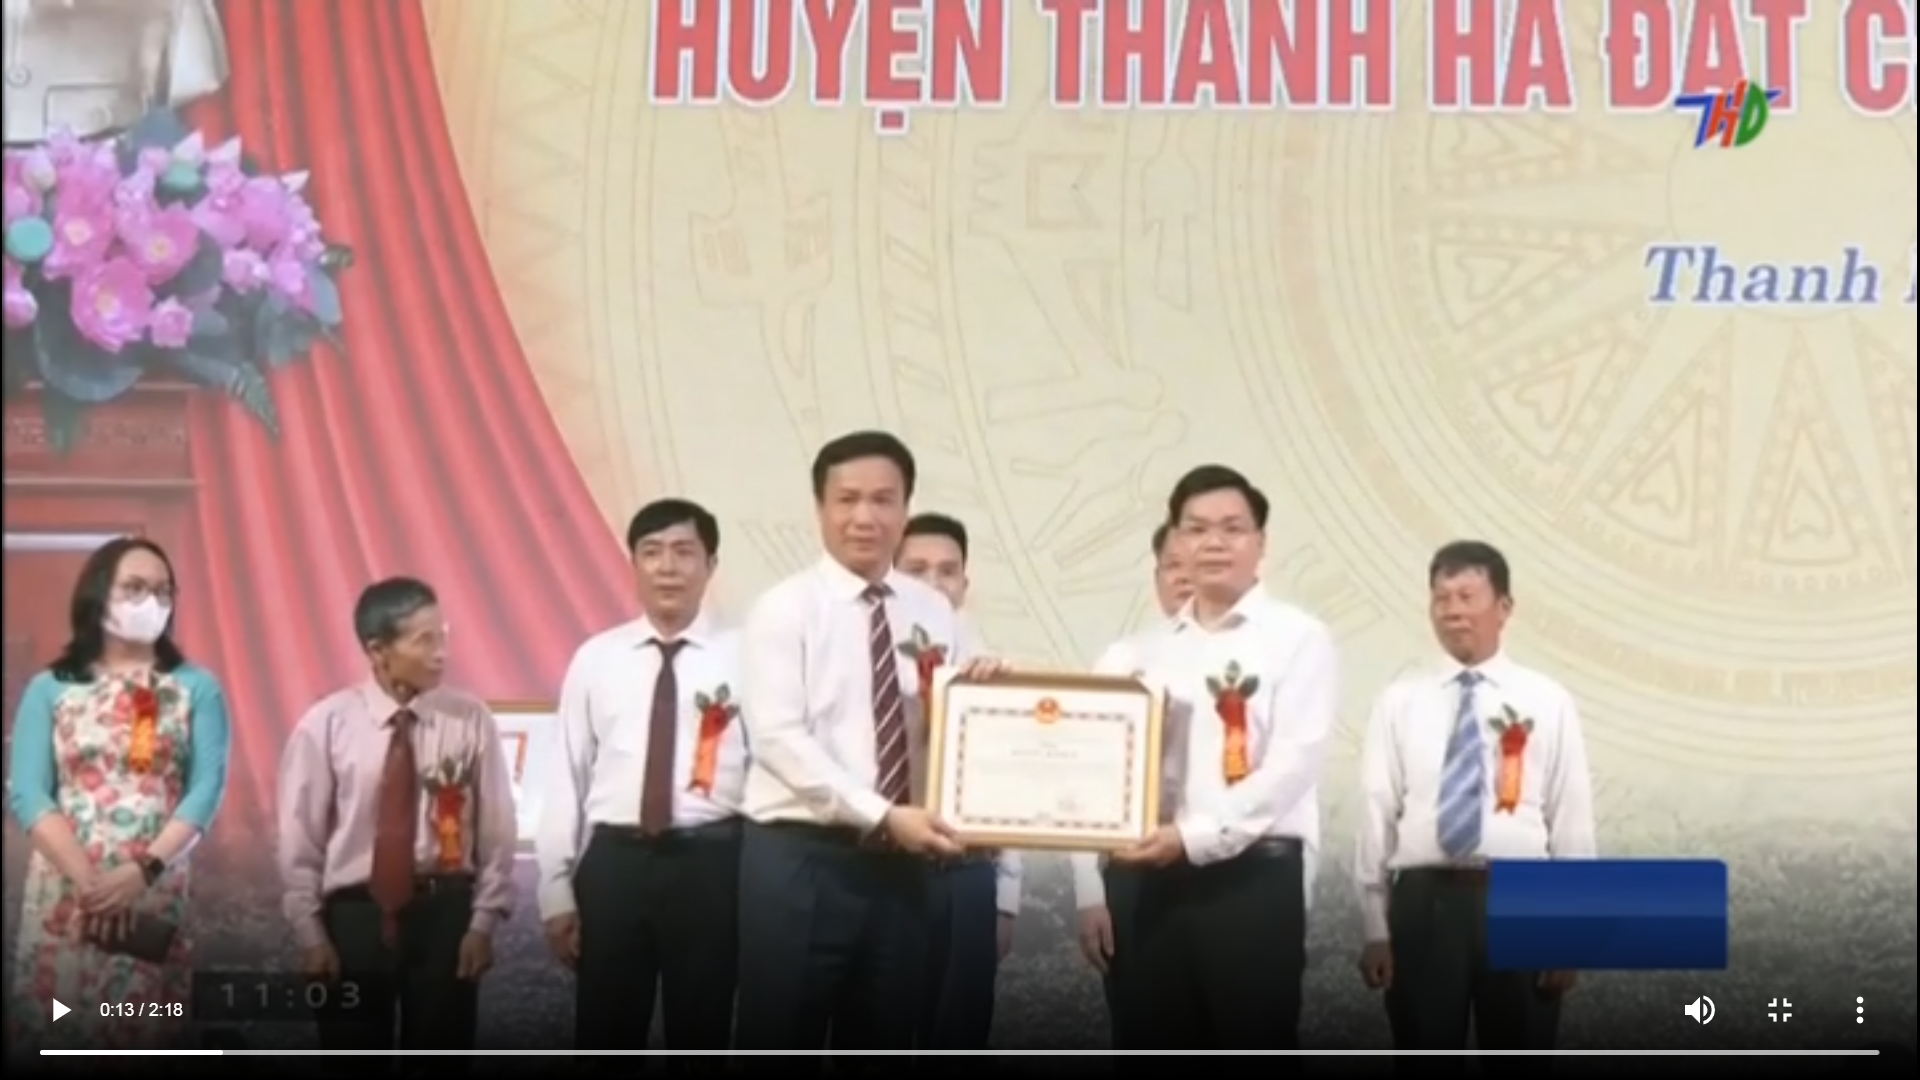 VIDEO: Huyện Thanh Hà long trọng đón nhận huyện đạt chuẩn NTM